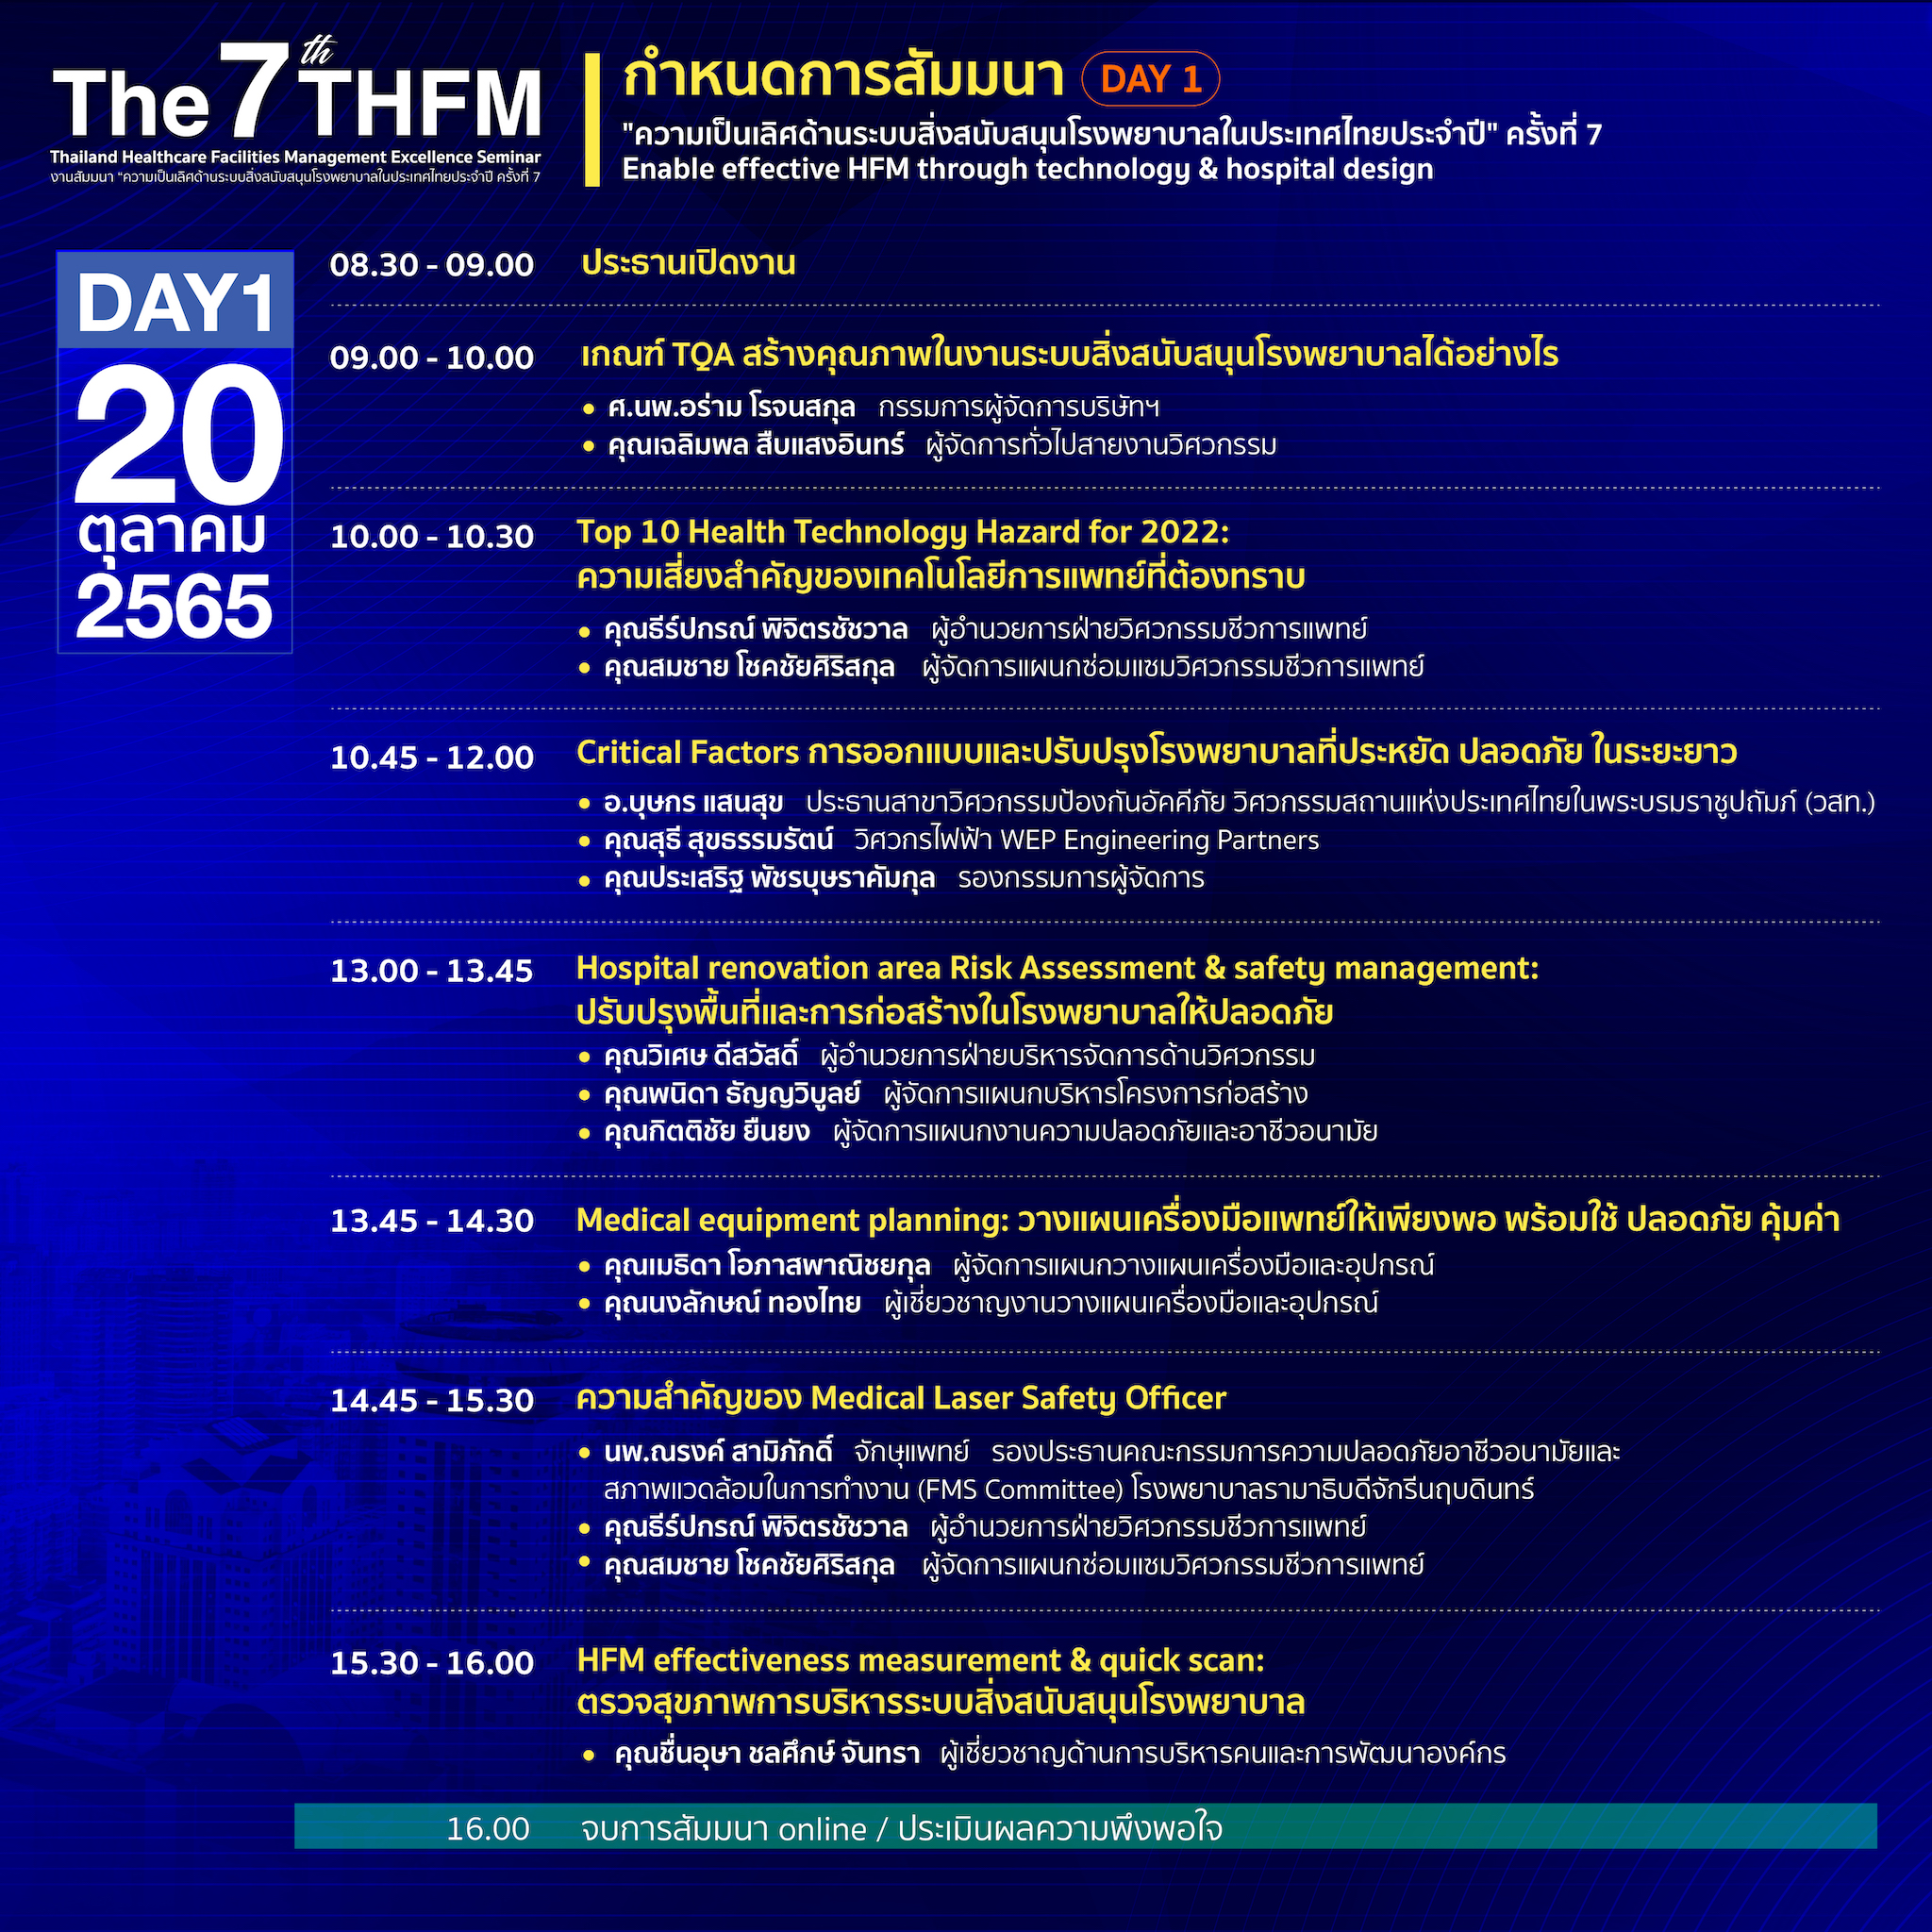 การสัมมนา "ความเป็นเลิศด้านระบบสิ่งสนับสนุนโรงพยาบาลในประเทศไทยประจำปี" ครั้งที่ 7 (The 7th Thailand Healthcare Facilities Management Excellence Seminar)